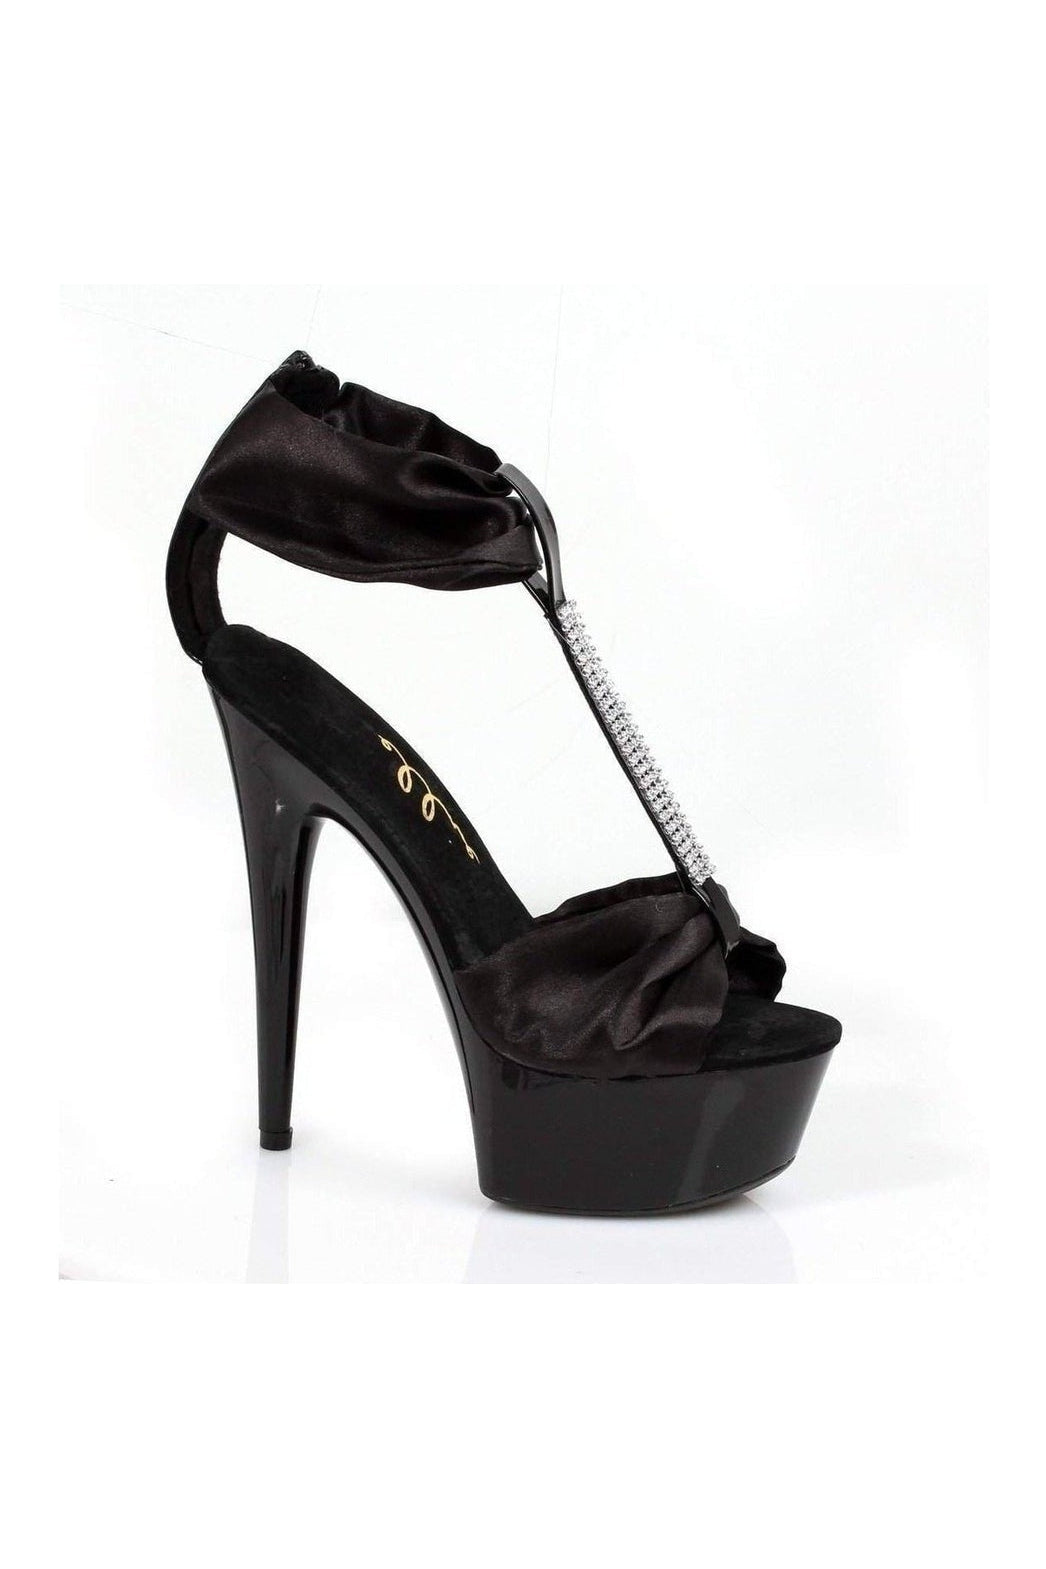 609-VIERA Platform Sandal | Black Patent-Ellie Shoes-SEXYSHOES.COM